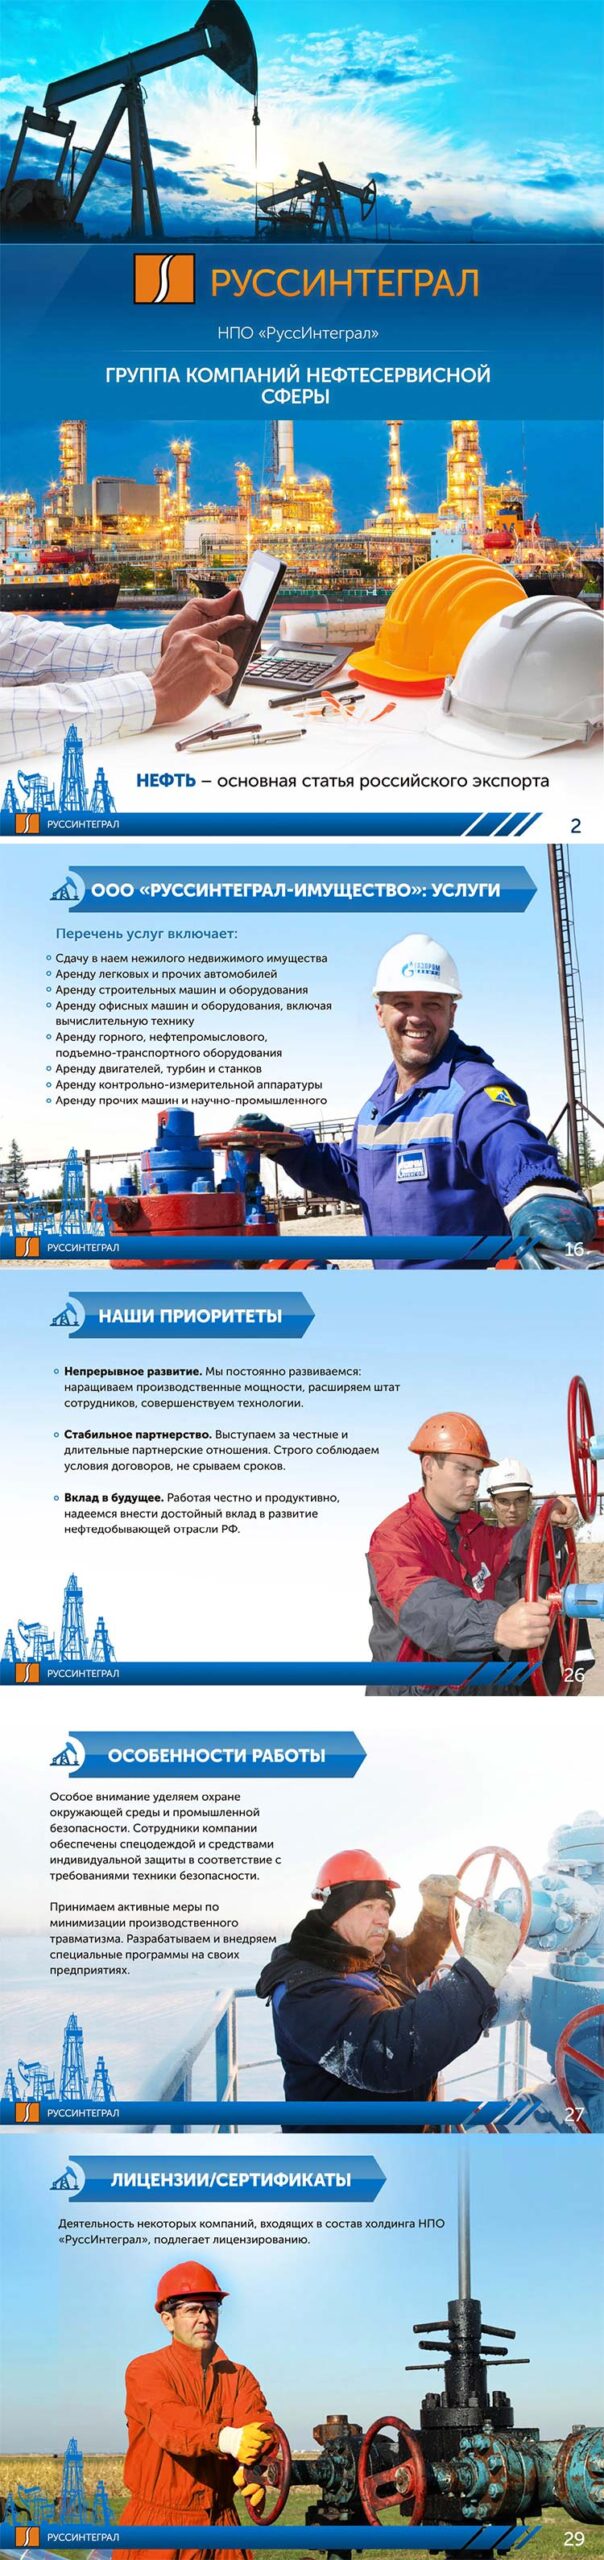 Презентация для нефтедобывающей сферы НПО «РуссИнтеграл» для клиента